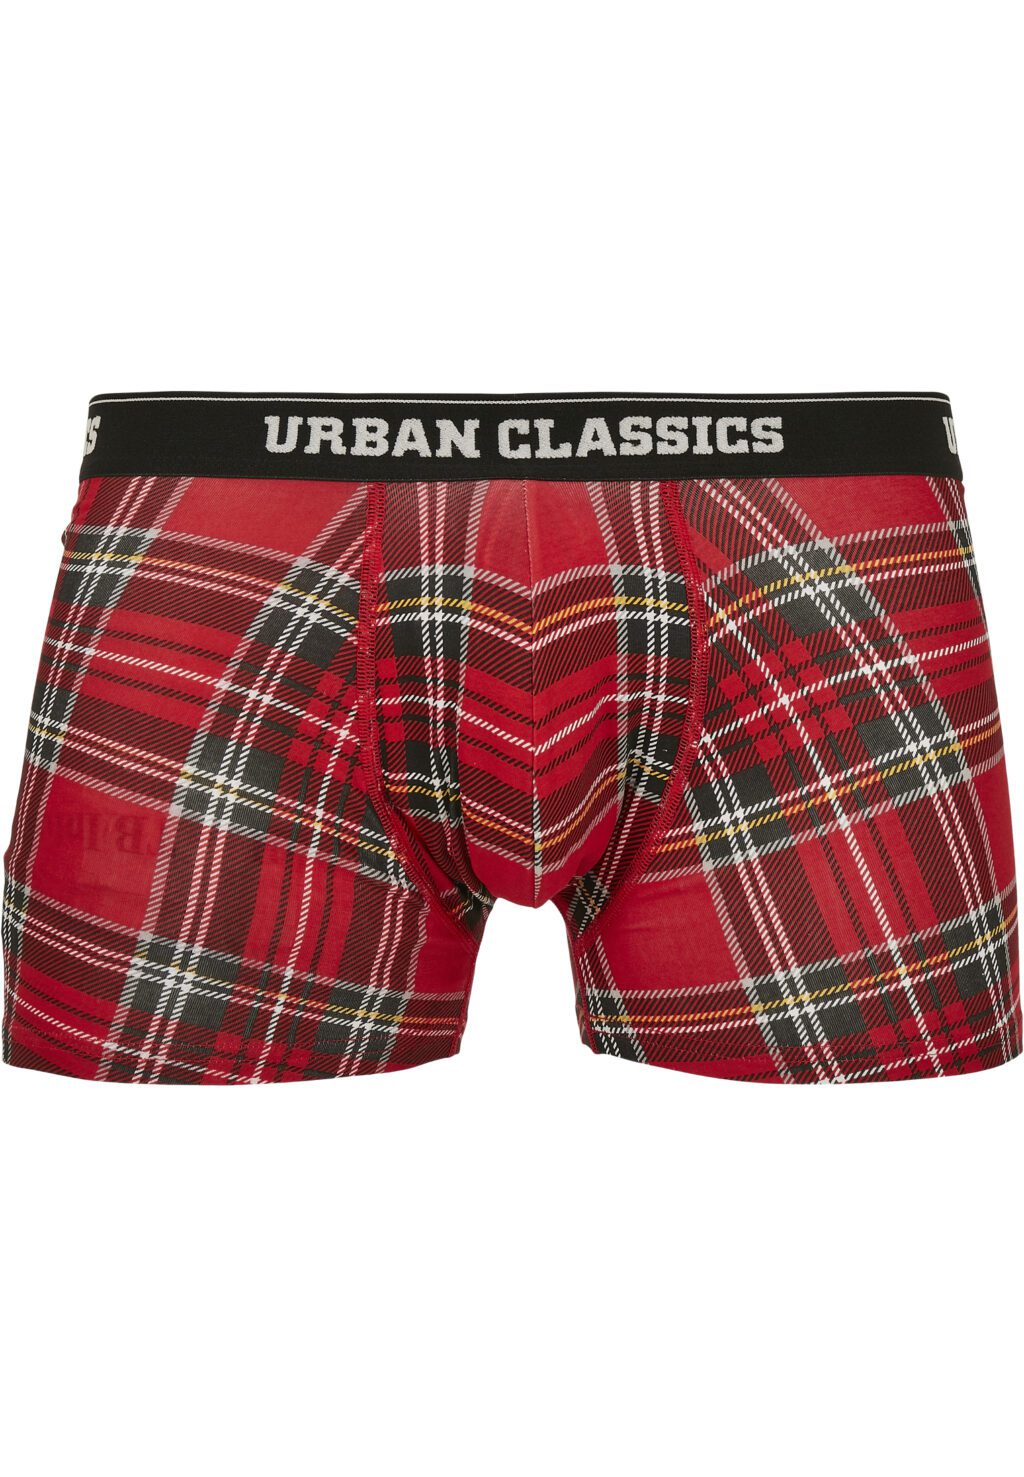 Urban Classics Boxer Shorts 3-Pack red plaid aop+moose aop+blk TB3839